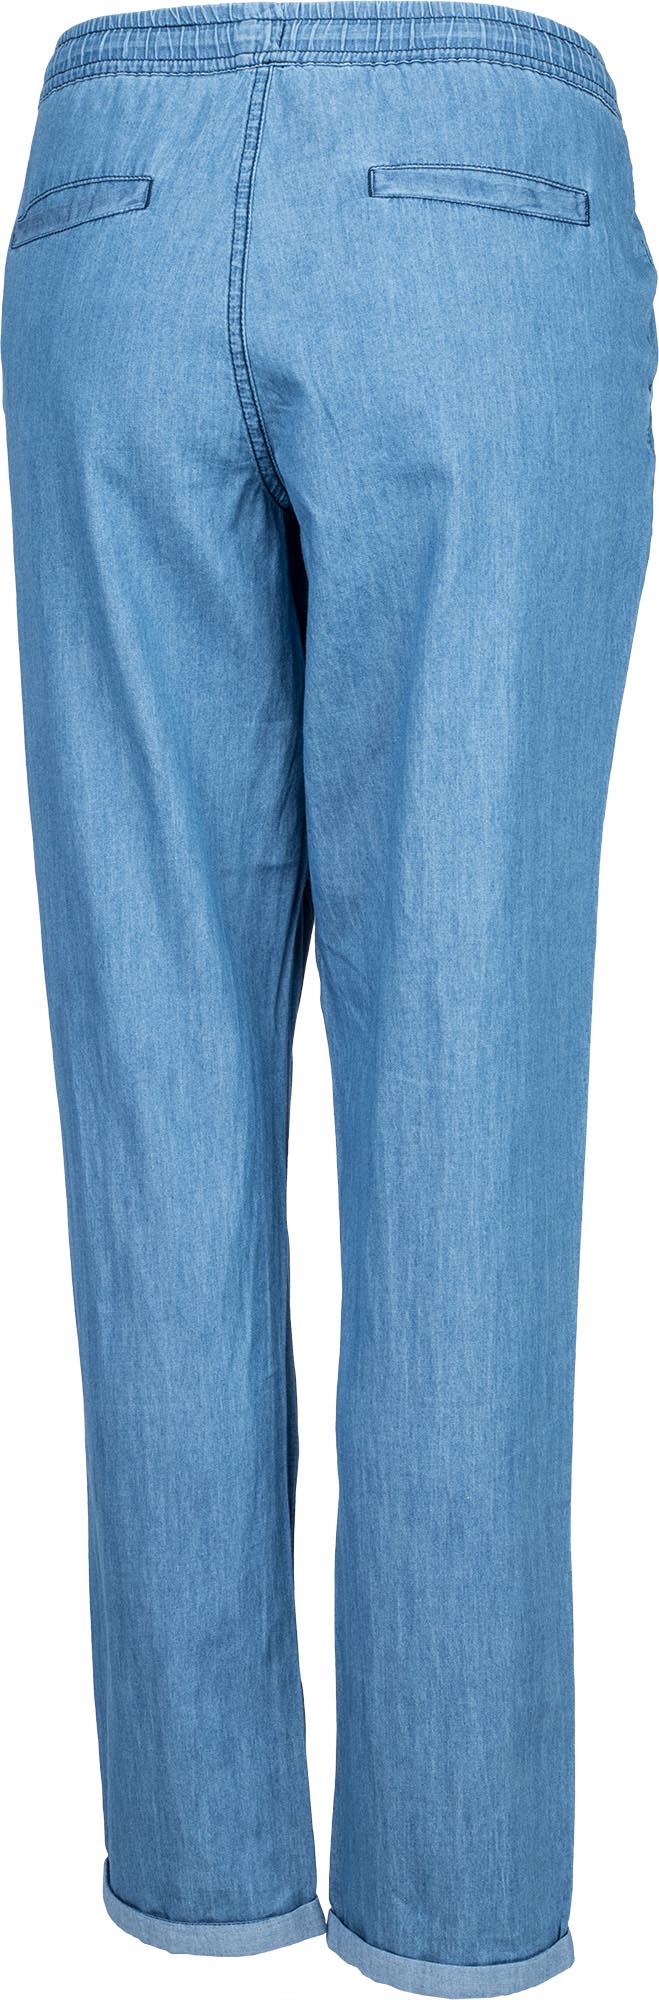 Dámské plátěné kalhoty džínového vzhledu